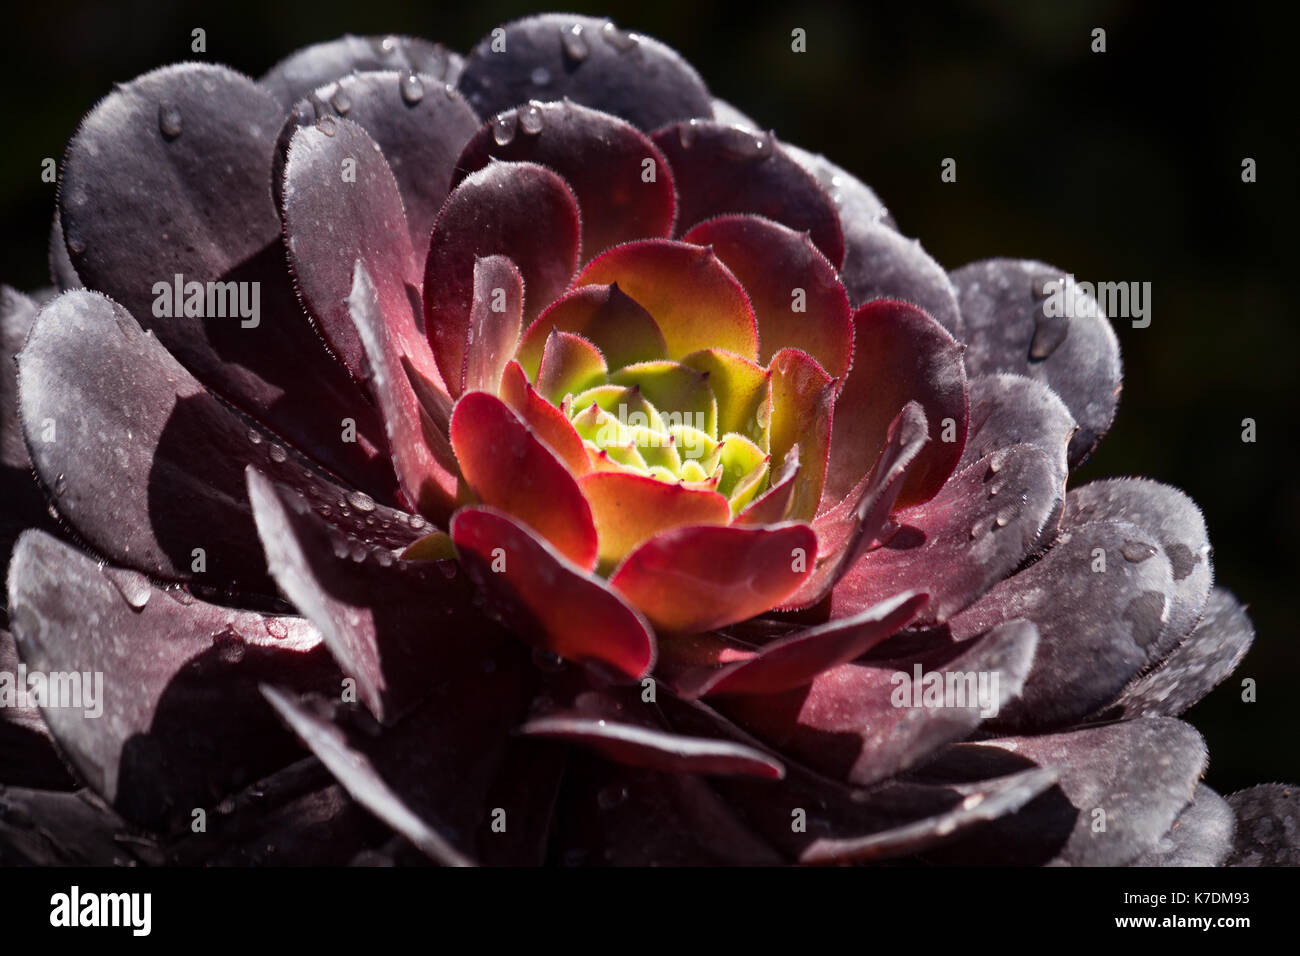 Aeonium  succulent cactus close up against a dark background Stock Photo